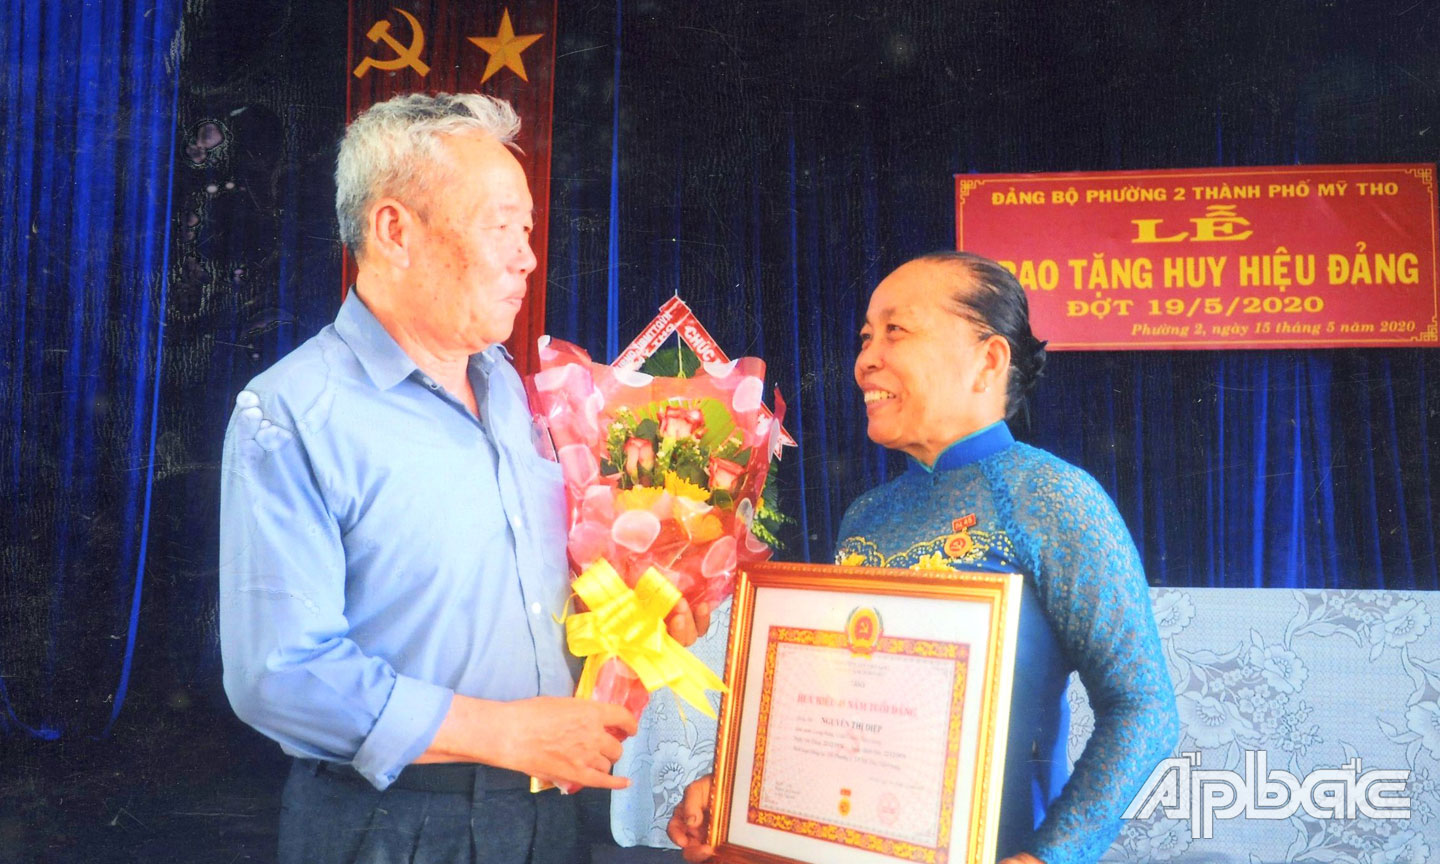  Chú Phú tặng hoa cho cô Diệp nhân dịp cô nhận Huy hiệu 45 năm tuổi Đảng (Ảnh do gia đình cung cấp).